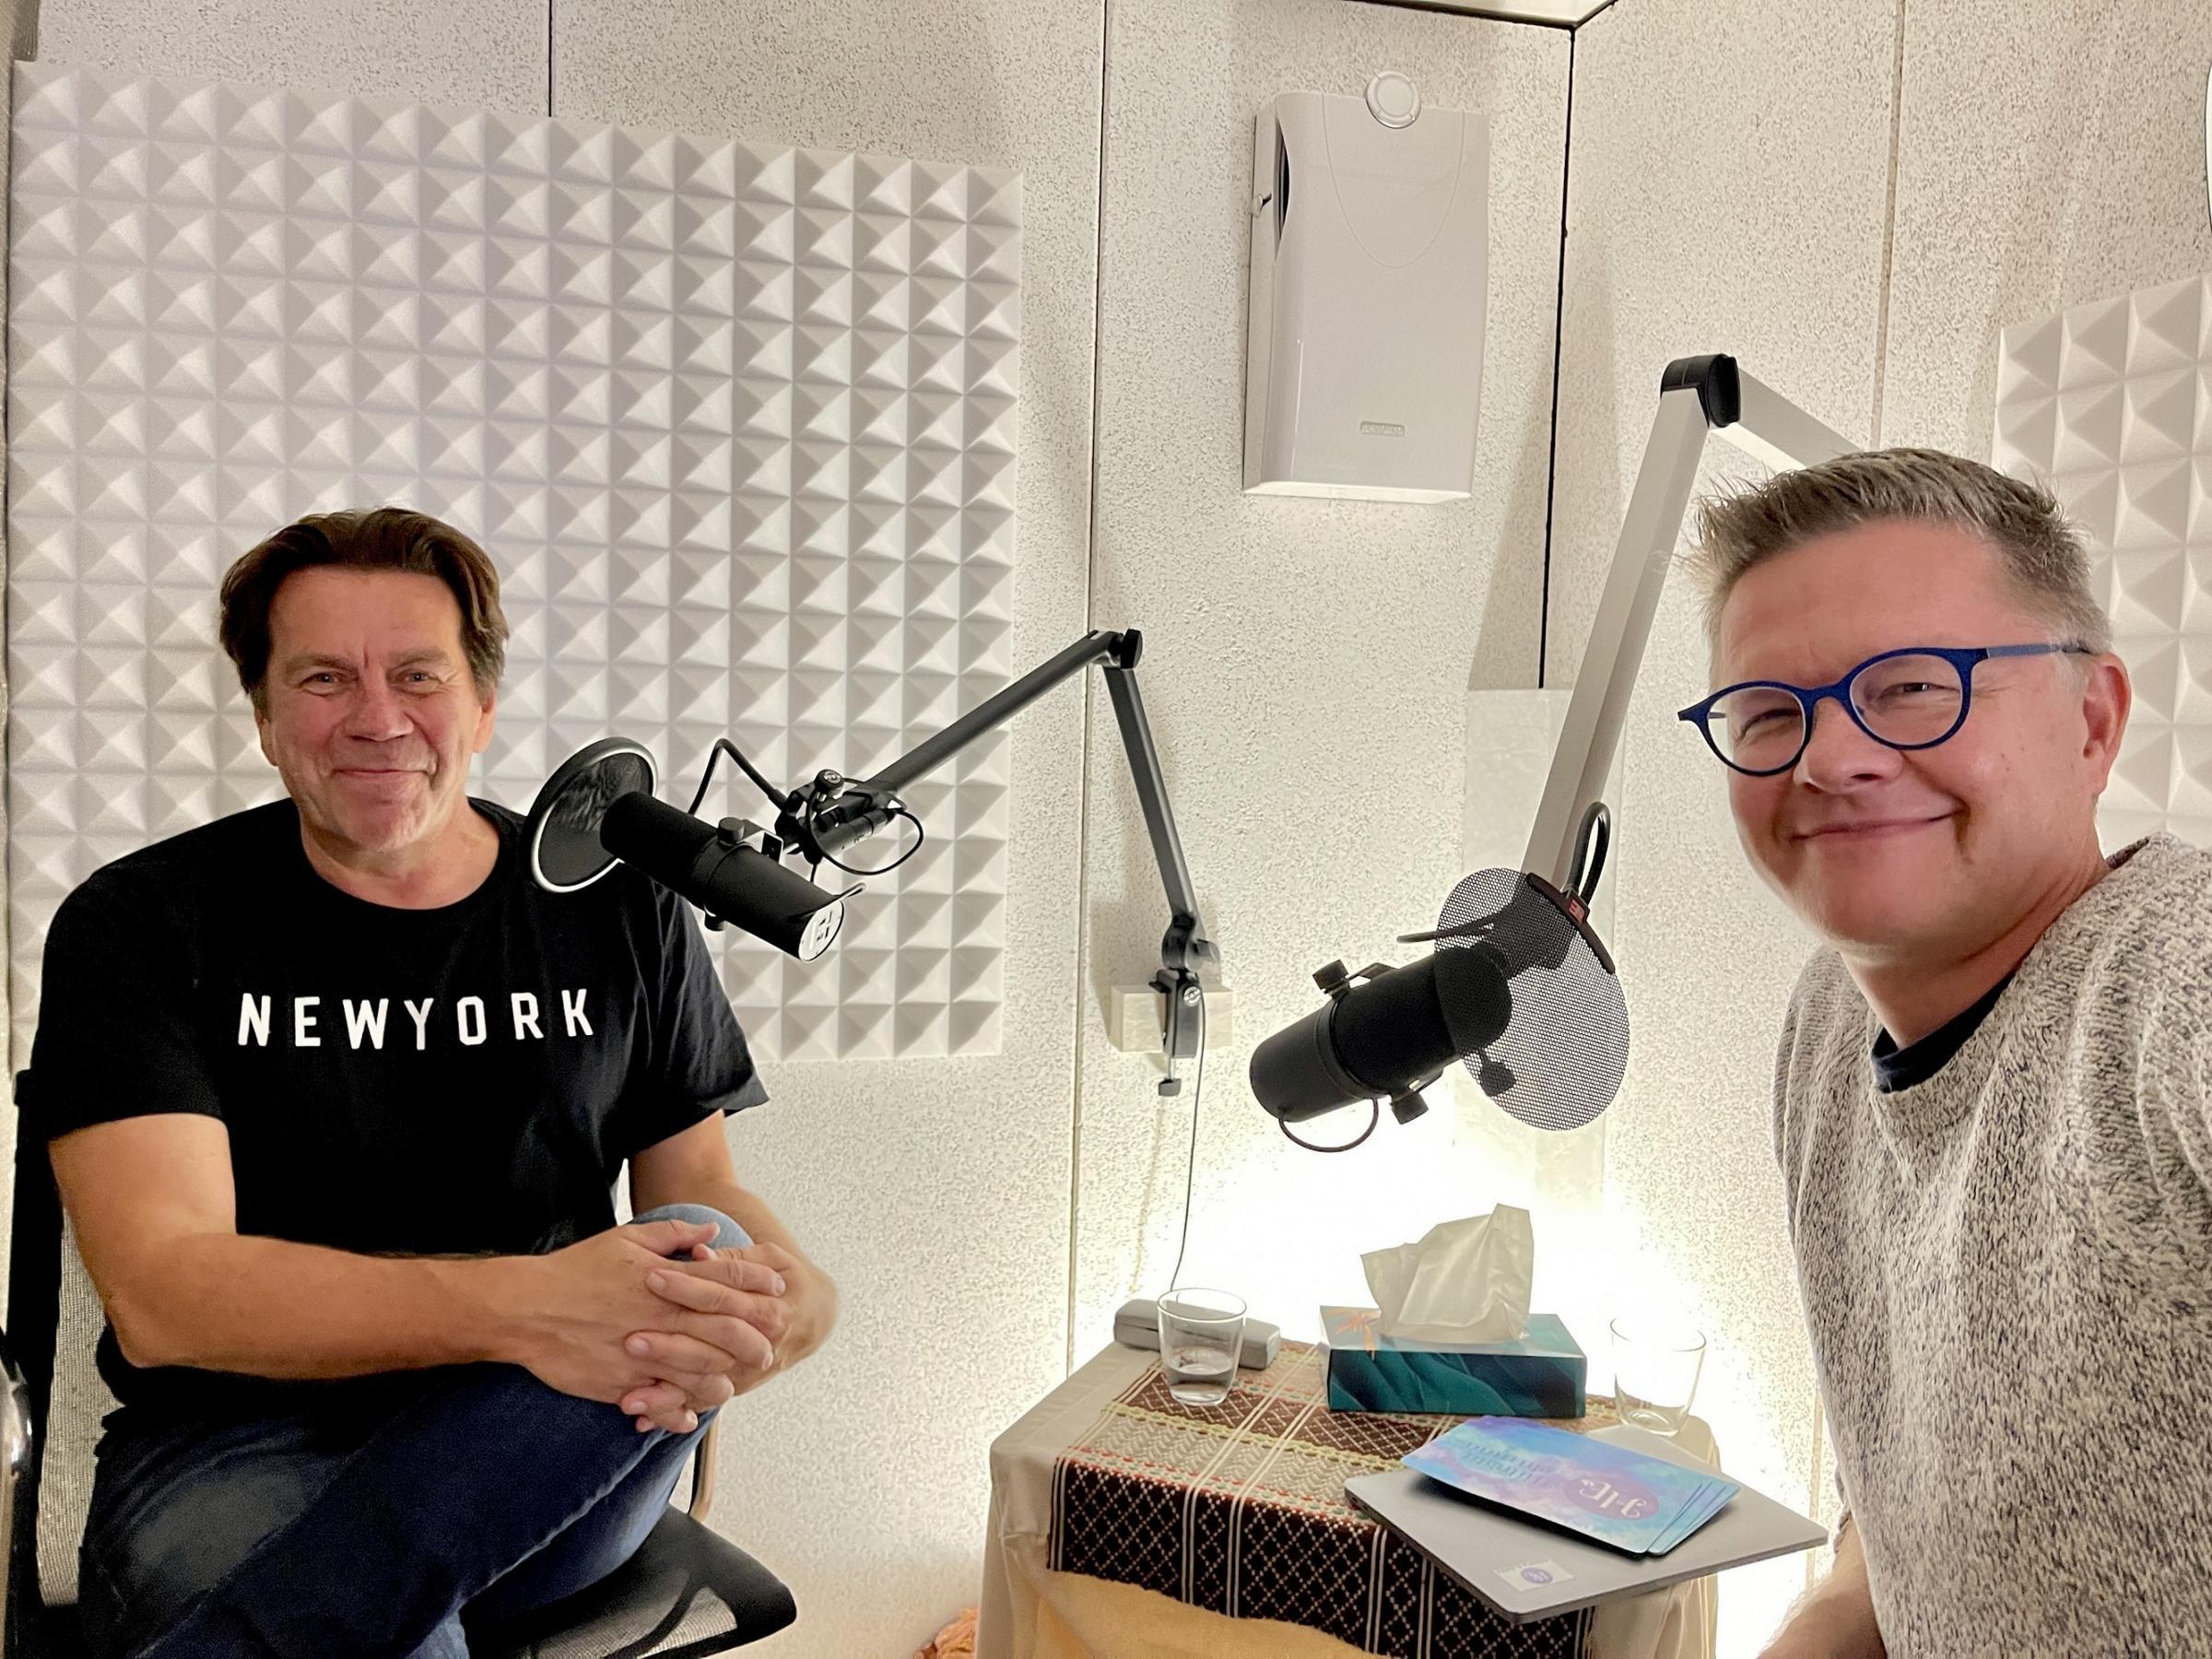 Valon pisaroita -podcastissa vieraana Mikko Kuustonen.